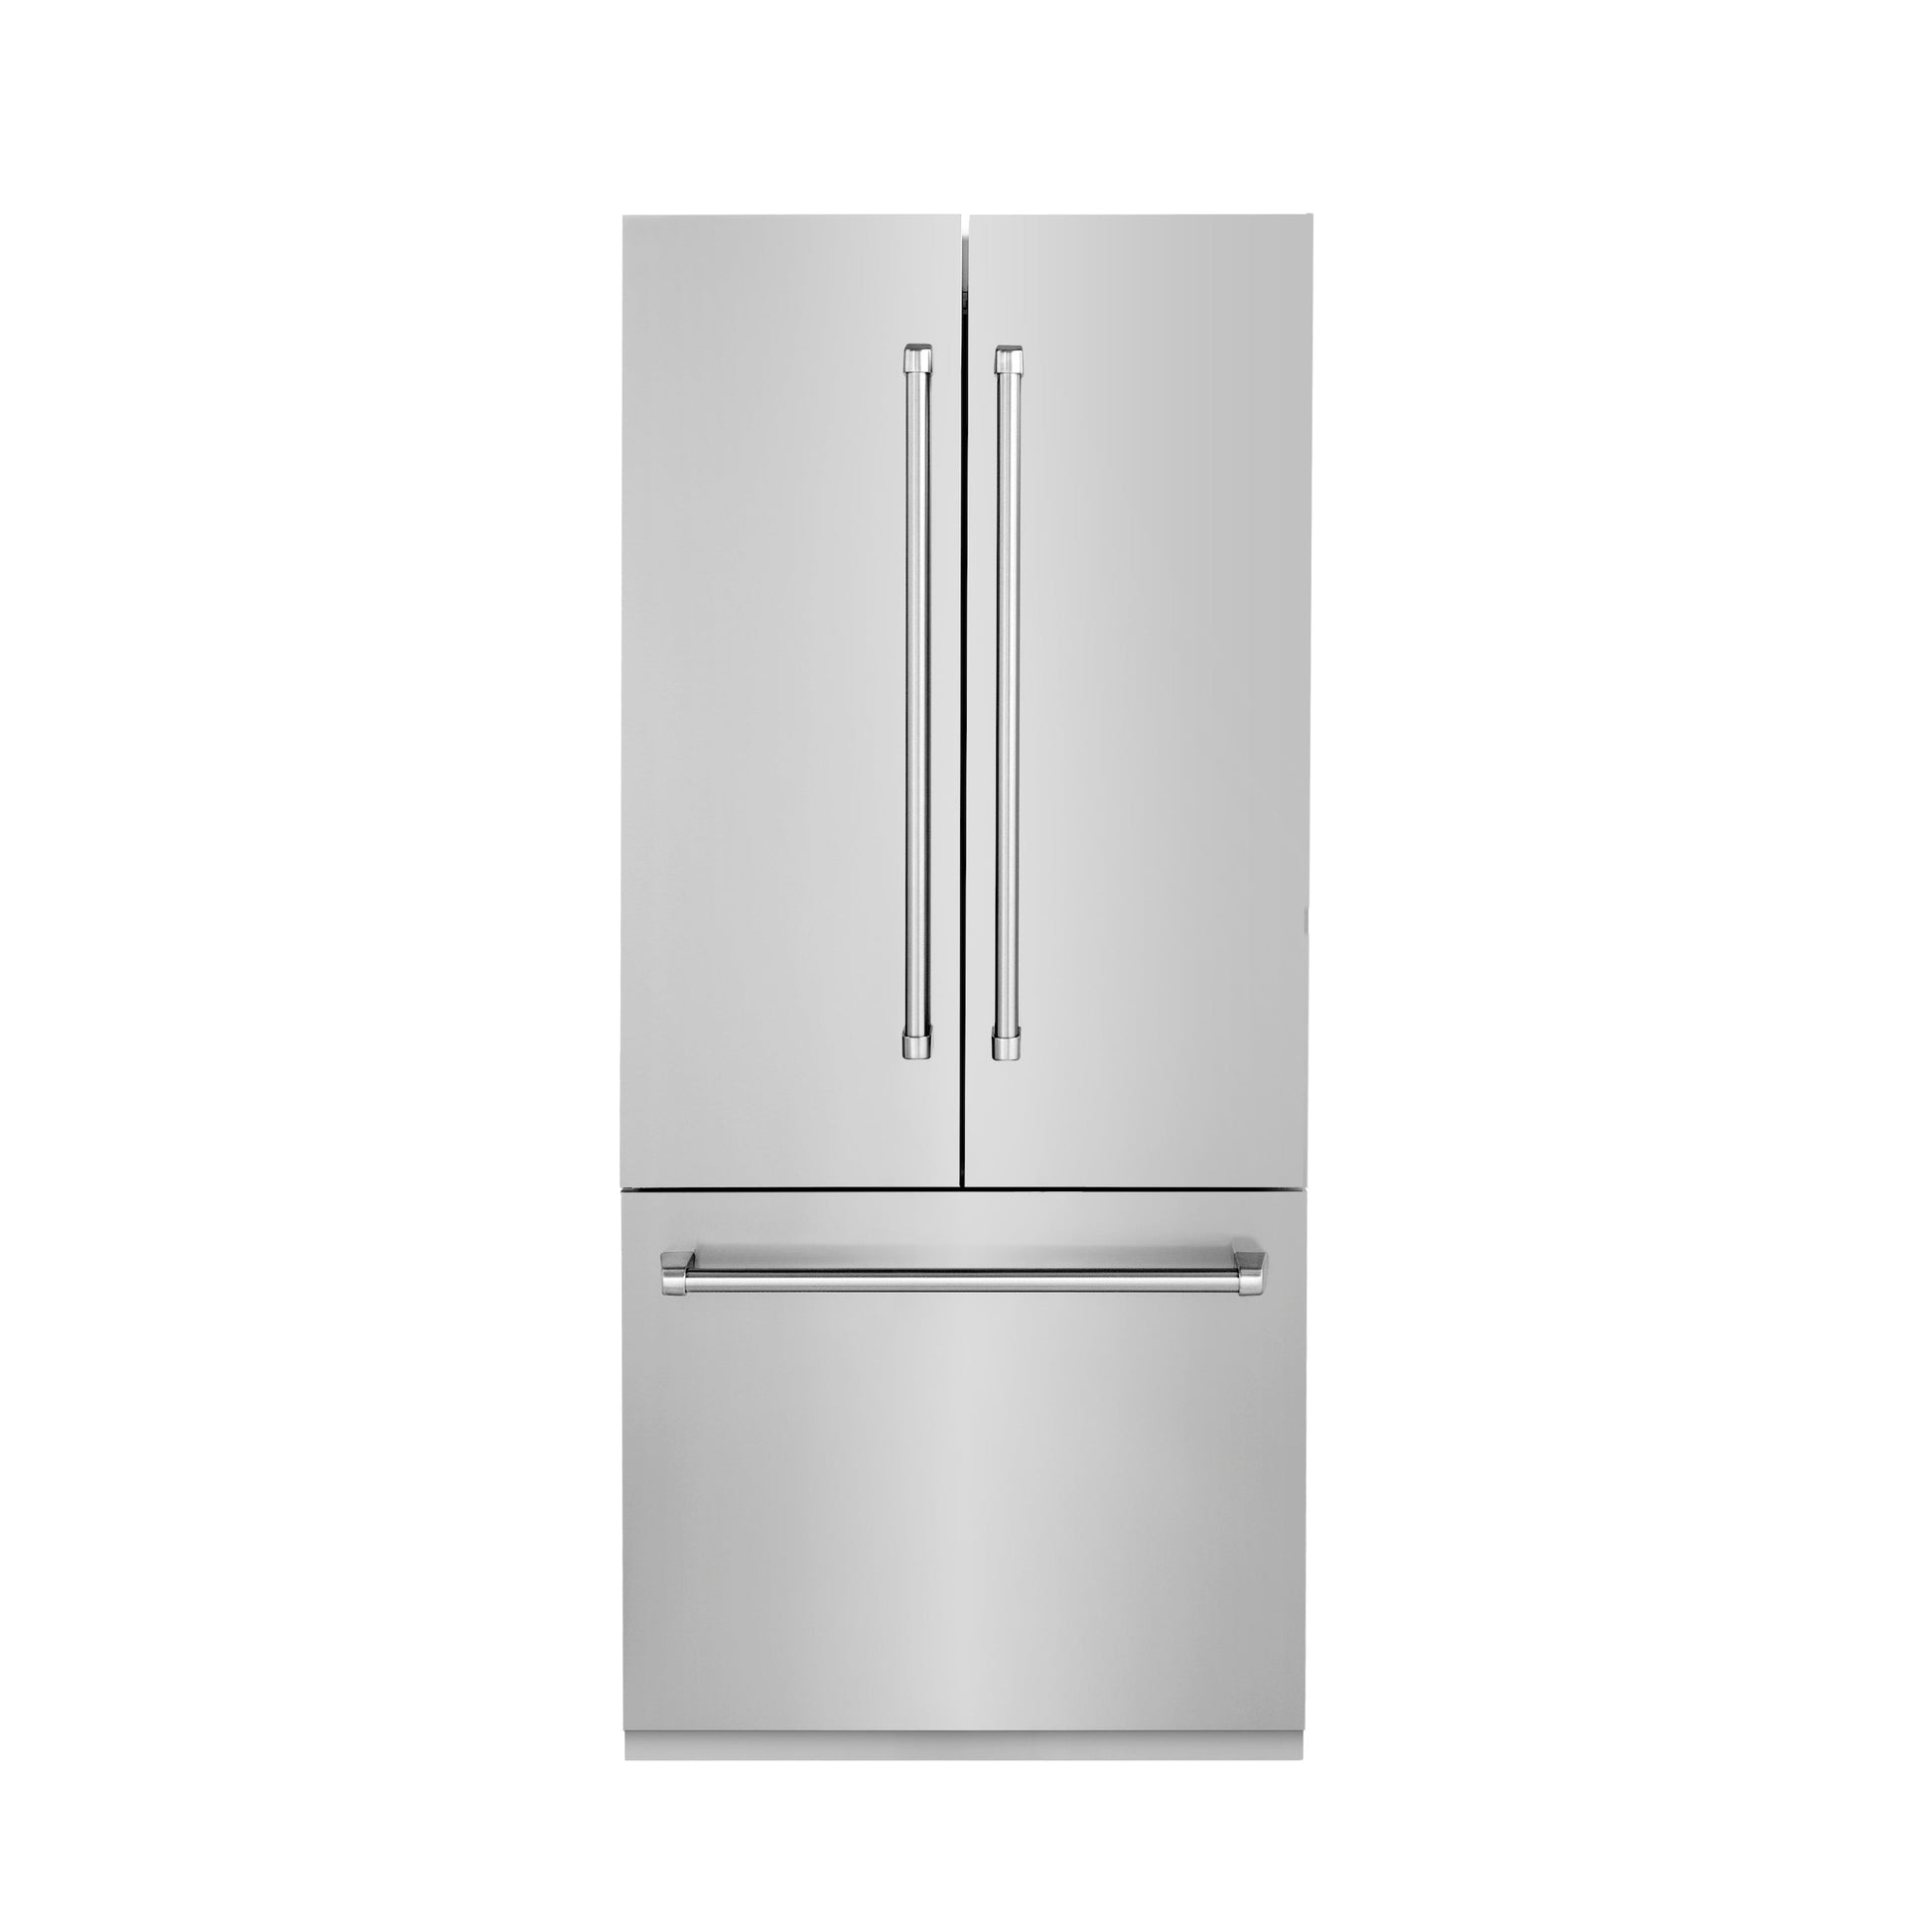 ZLINE 36 in. 19.6 cu. ft. Built-In 3-Door French Door Refrigerator with Internal Water and Ice Dispenser in Stainless Steel (RBIV-304-36) front.